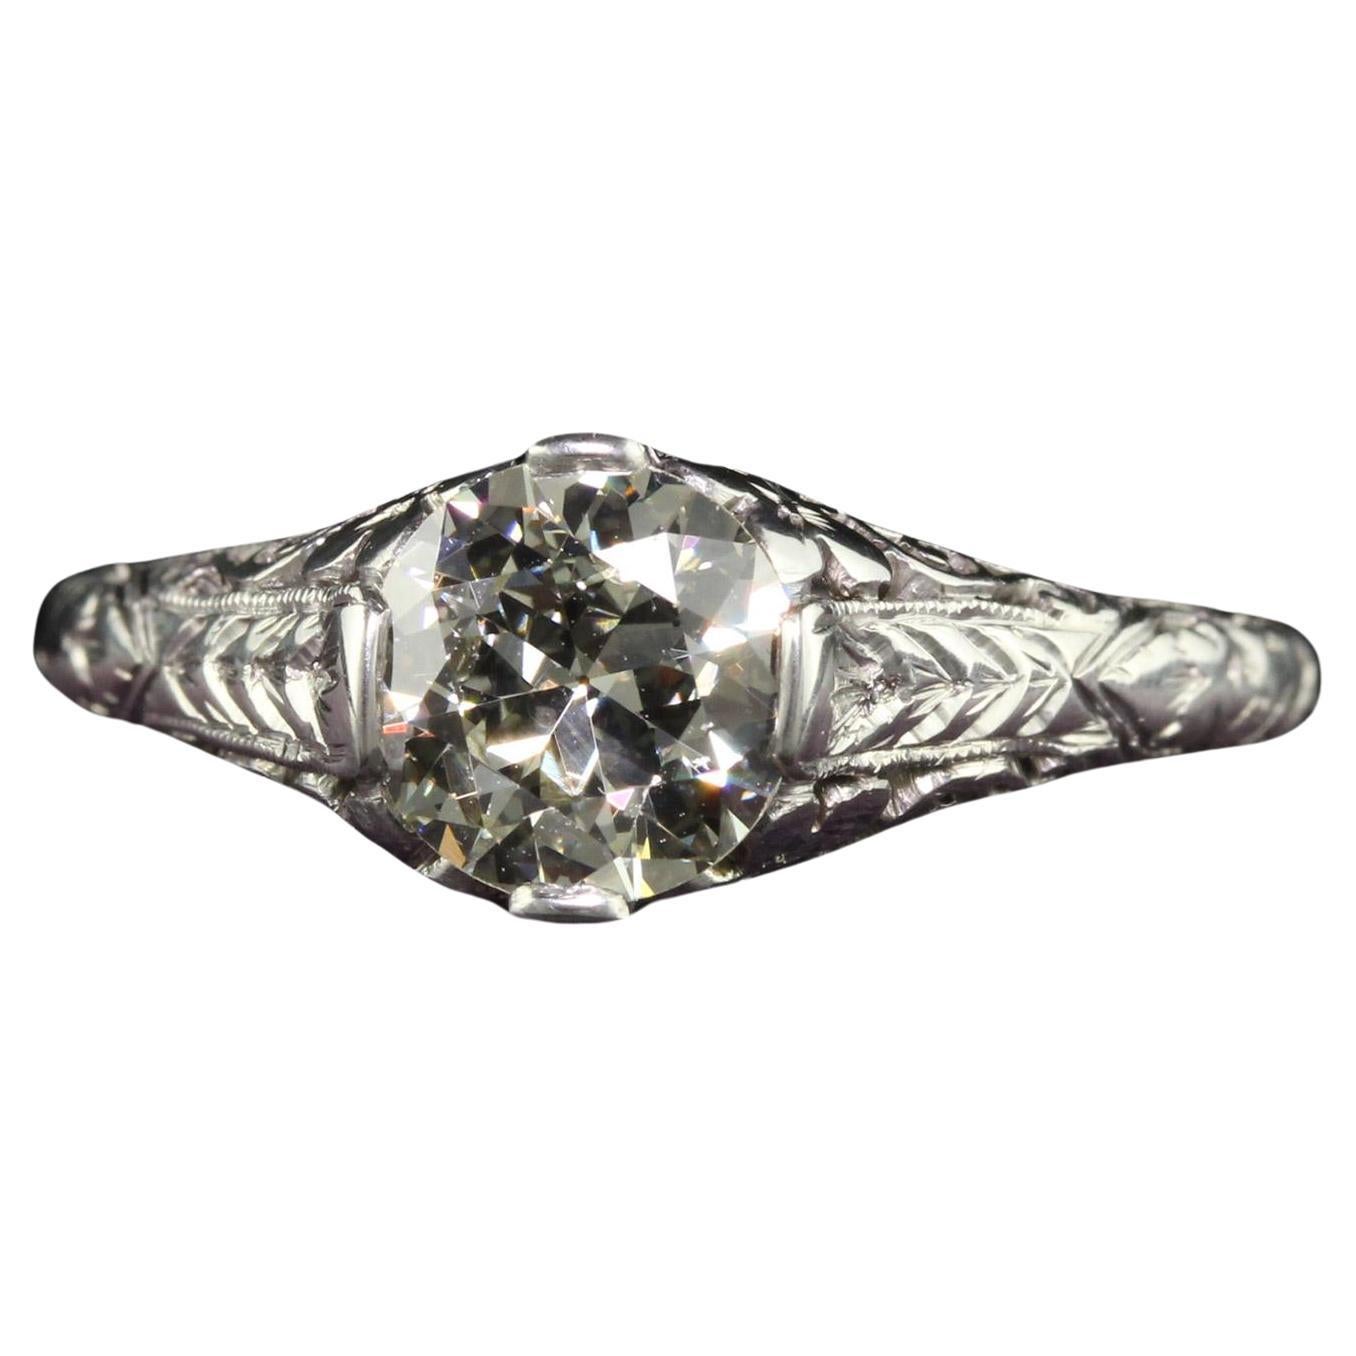 Antique Art Deco Platinum Old European Cut Diamond Engagement Ring - GIA